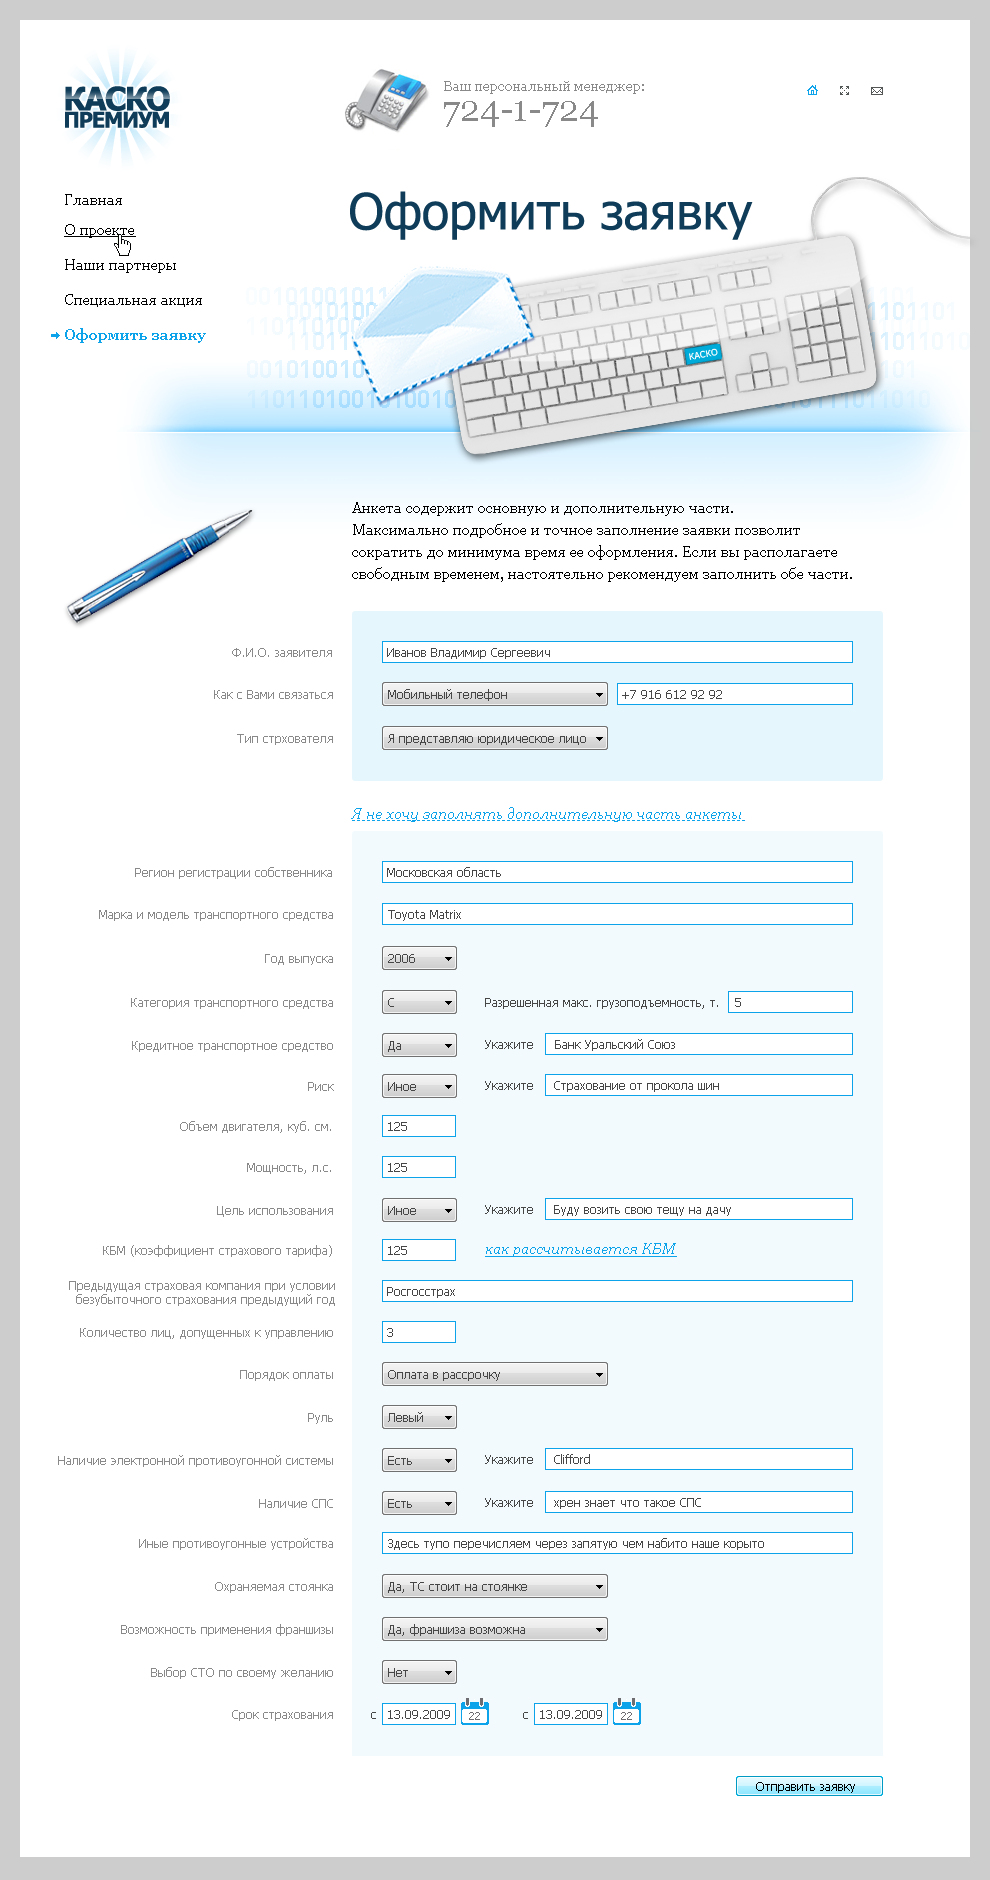 Интерфейс оформления заявки для сайта онлайн-автострахования